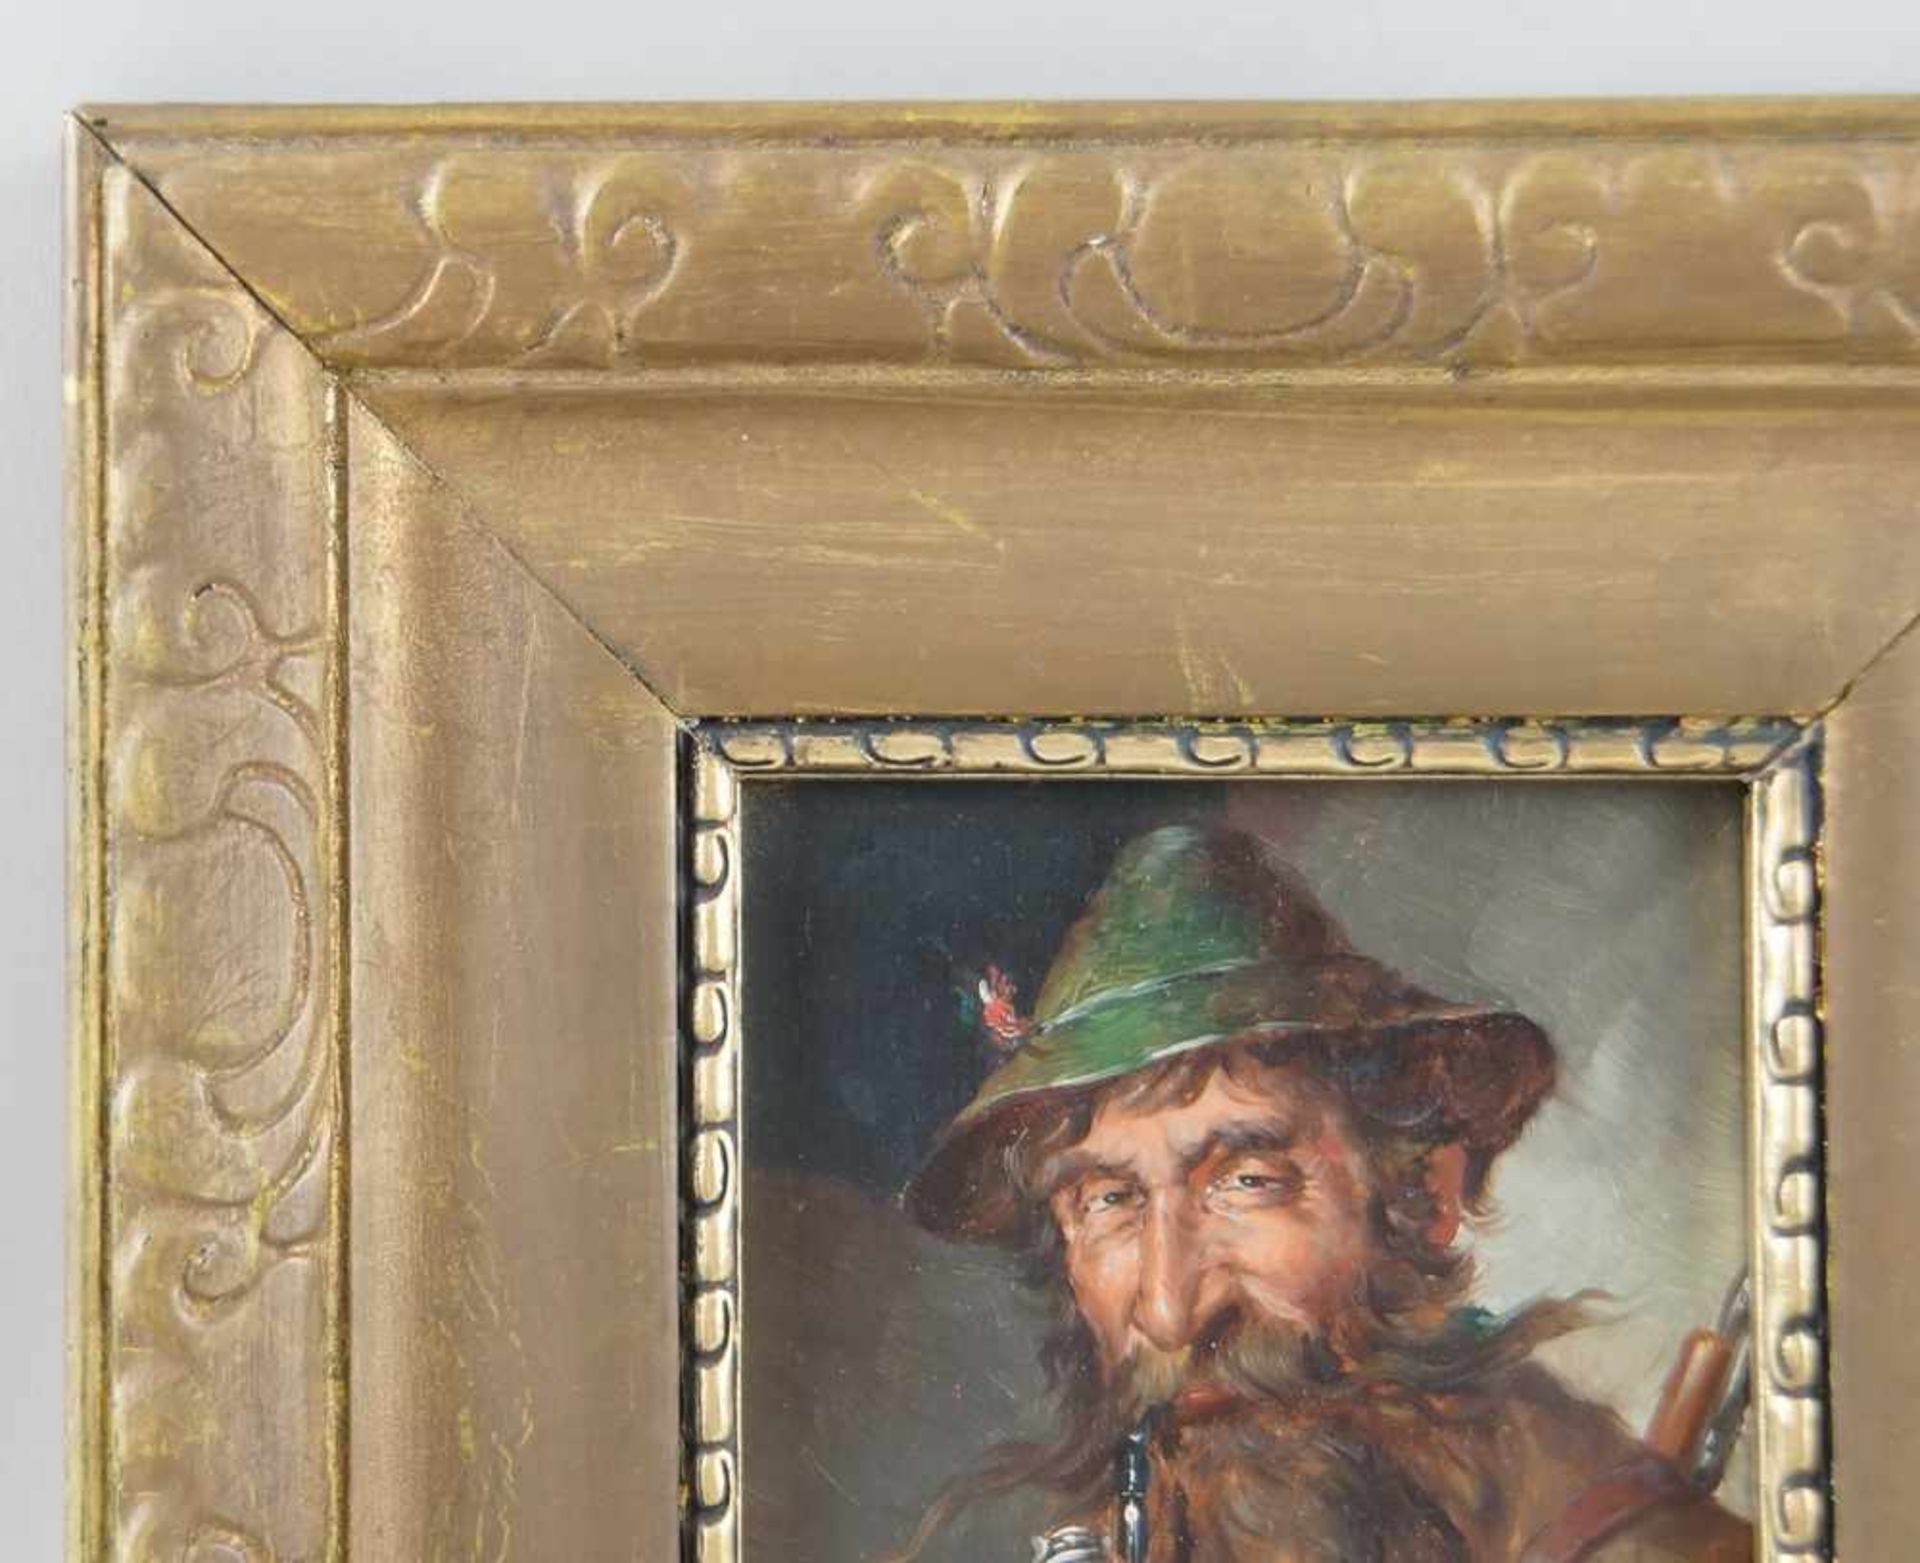 Jäger mit Hut und Pfeiffe, Öl auf Holz, gerahmt, signiert, W. Schmiedgen, 30x26cm- - -24.00 % - Bild 4 aus 5